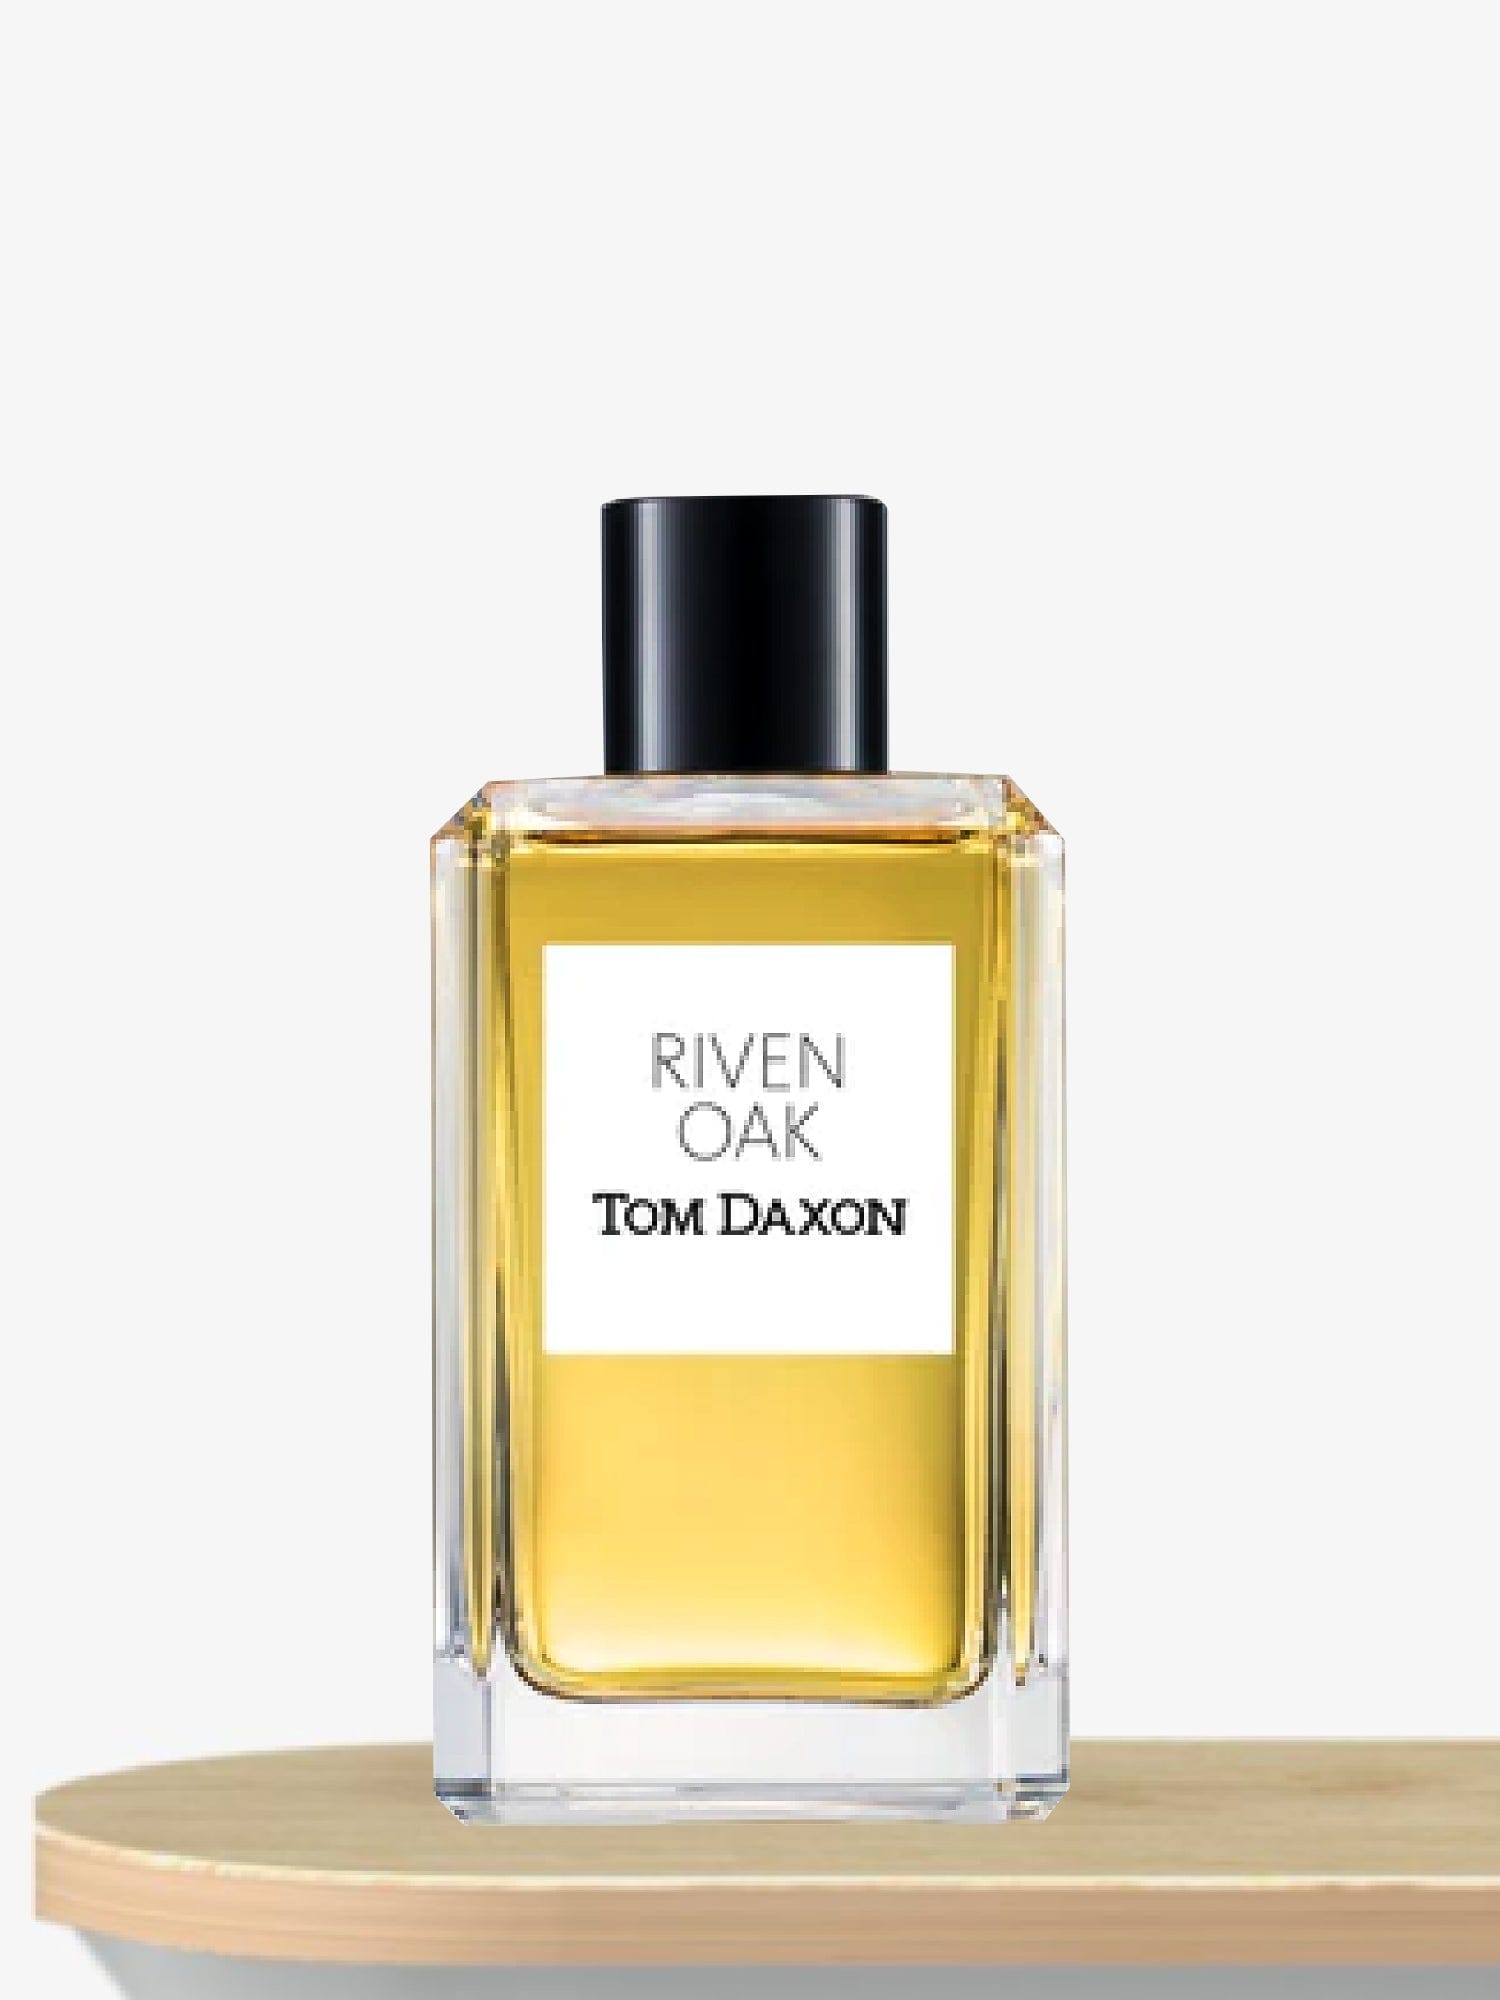 Tom Daxon Riven Oak Eau de Parfum 100 mL / Unisex